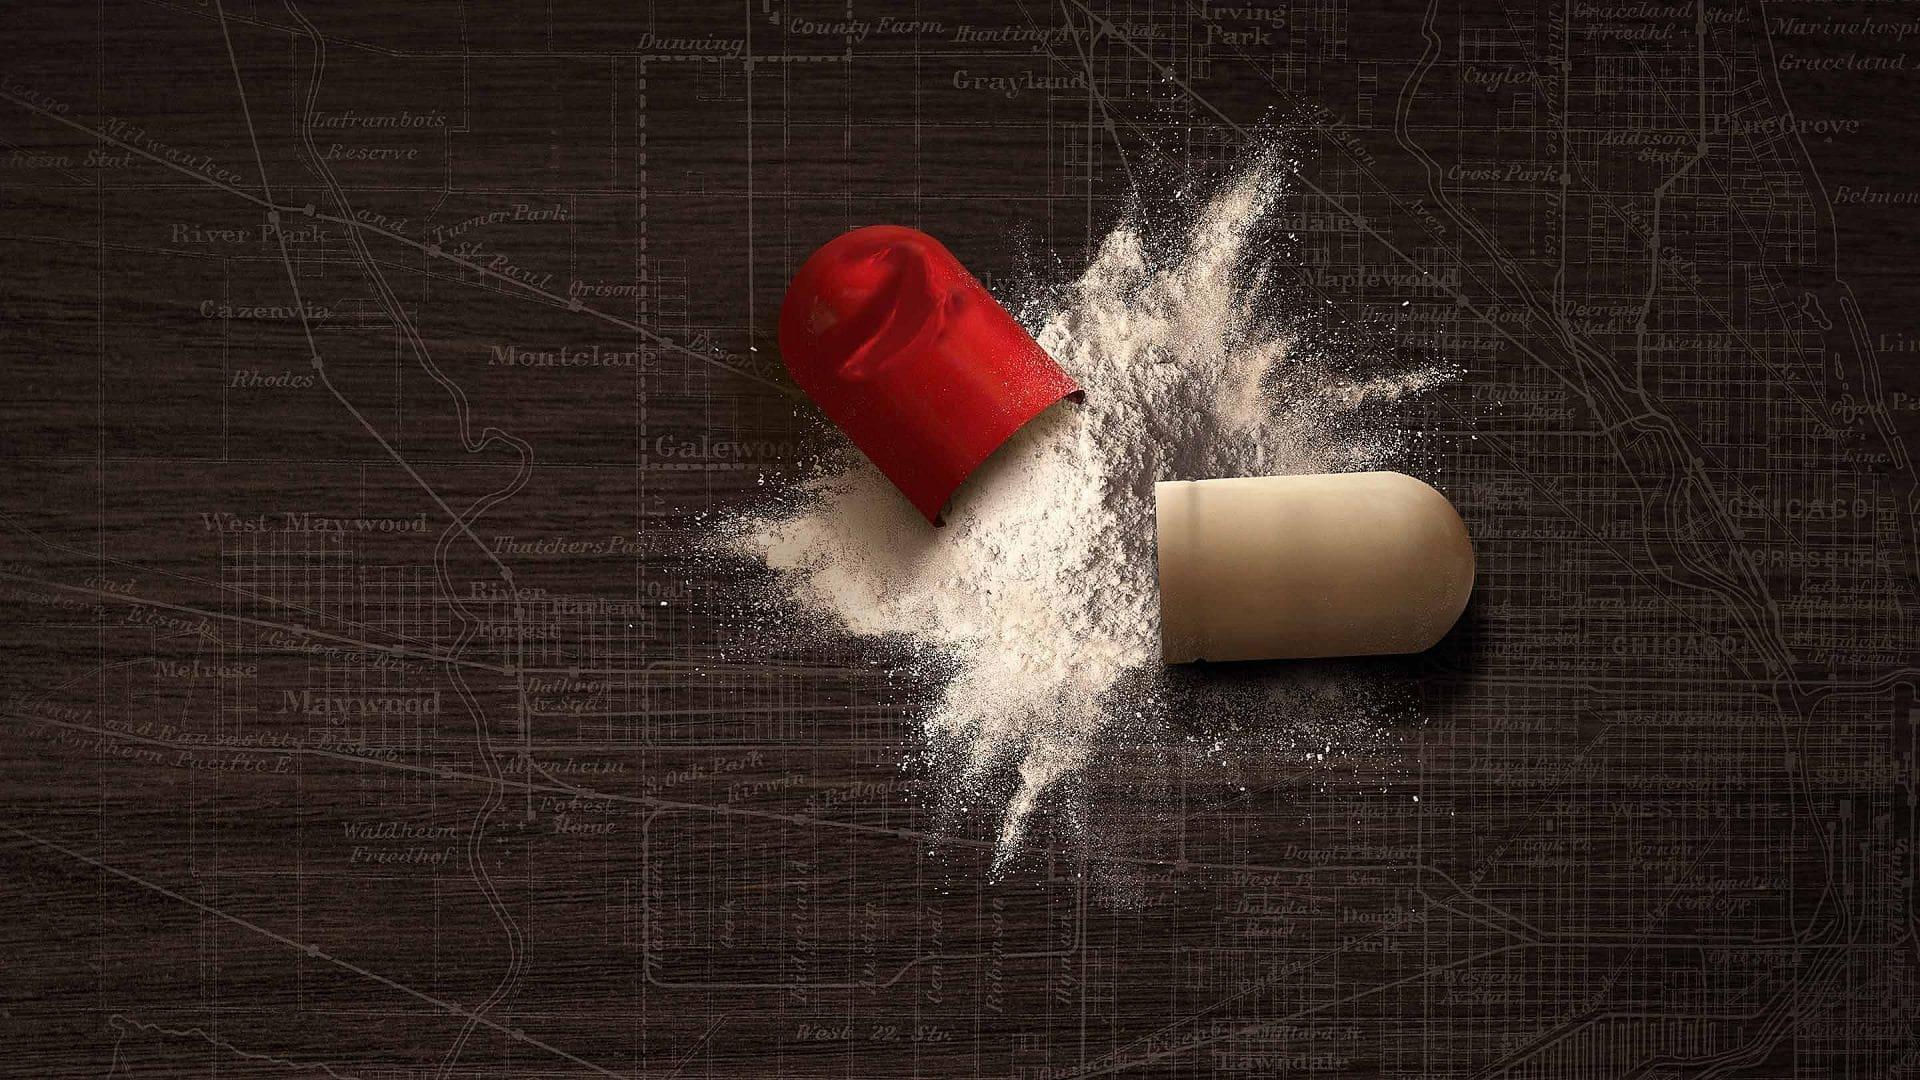 Painkiller: The Tylenol Murders backdrop